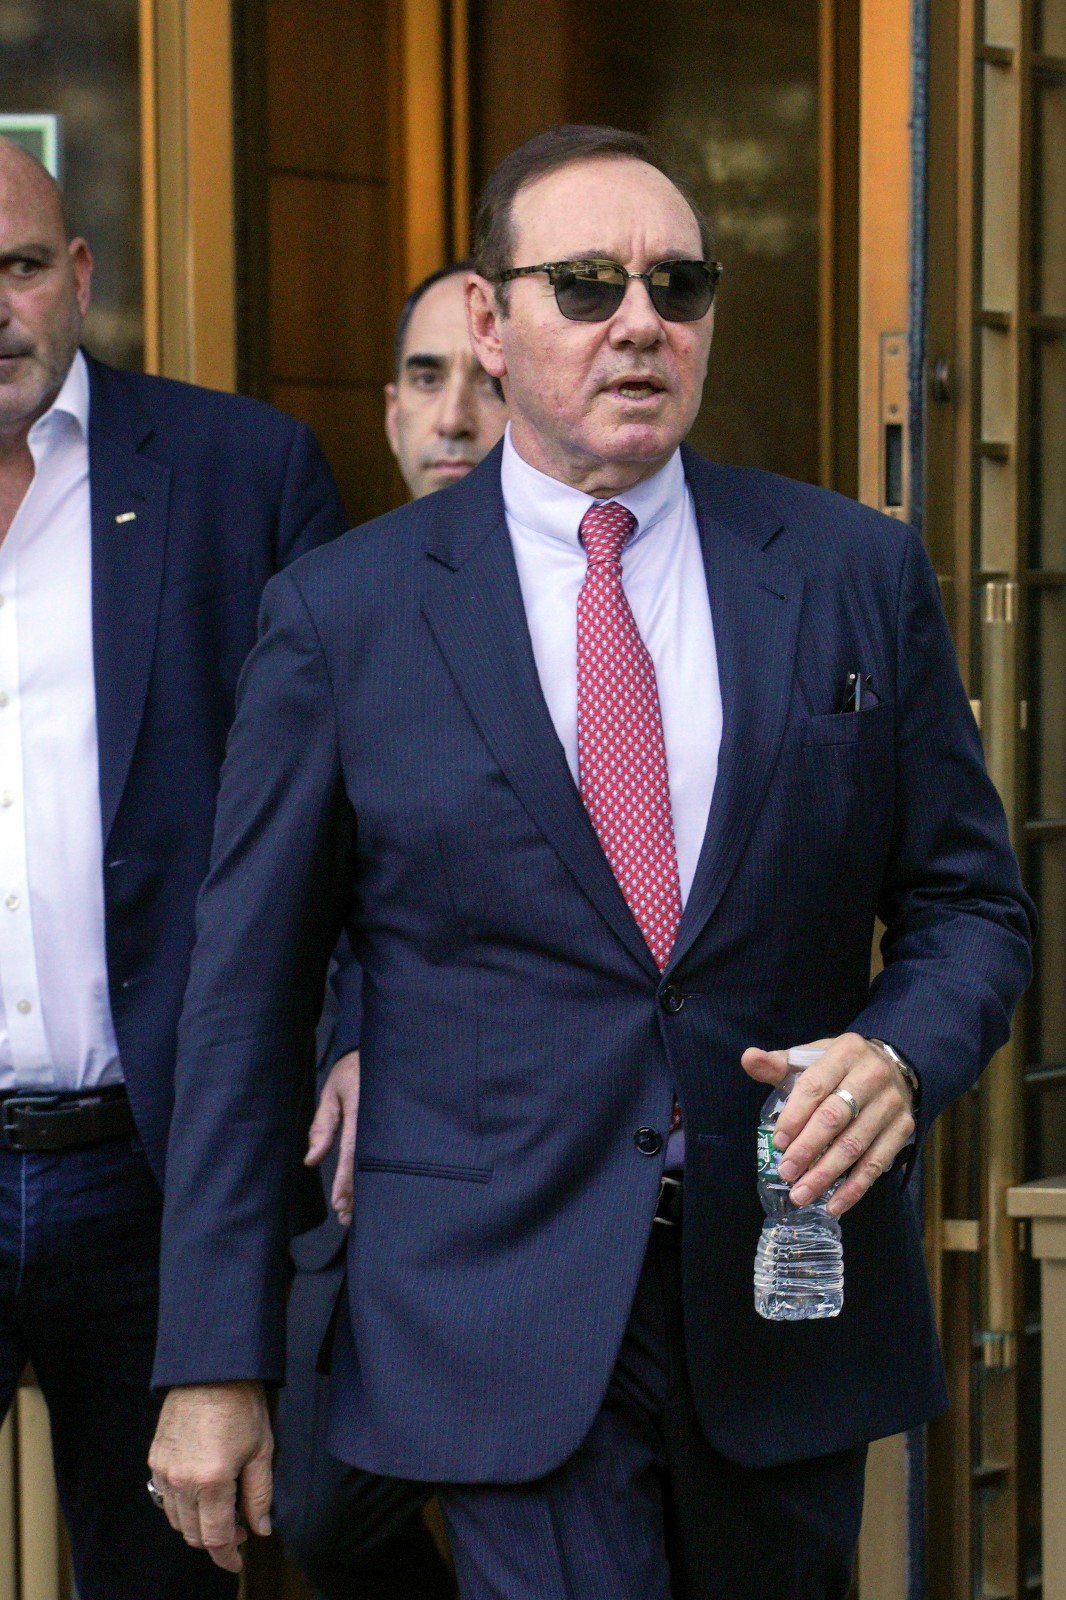 Newyorský soud zprostil Kevina Spaceyho obvinění ze sexuálního obtěžování tehdy nezletilého Anthonyho Rappa.